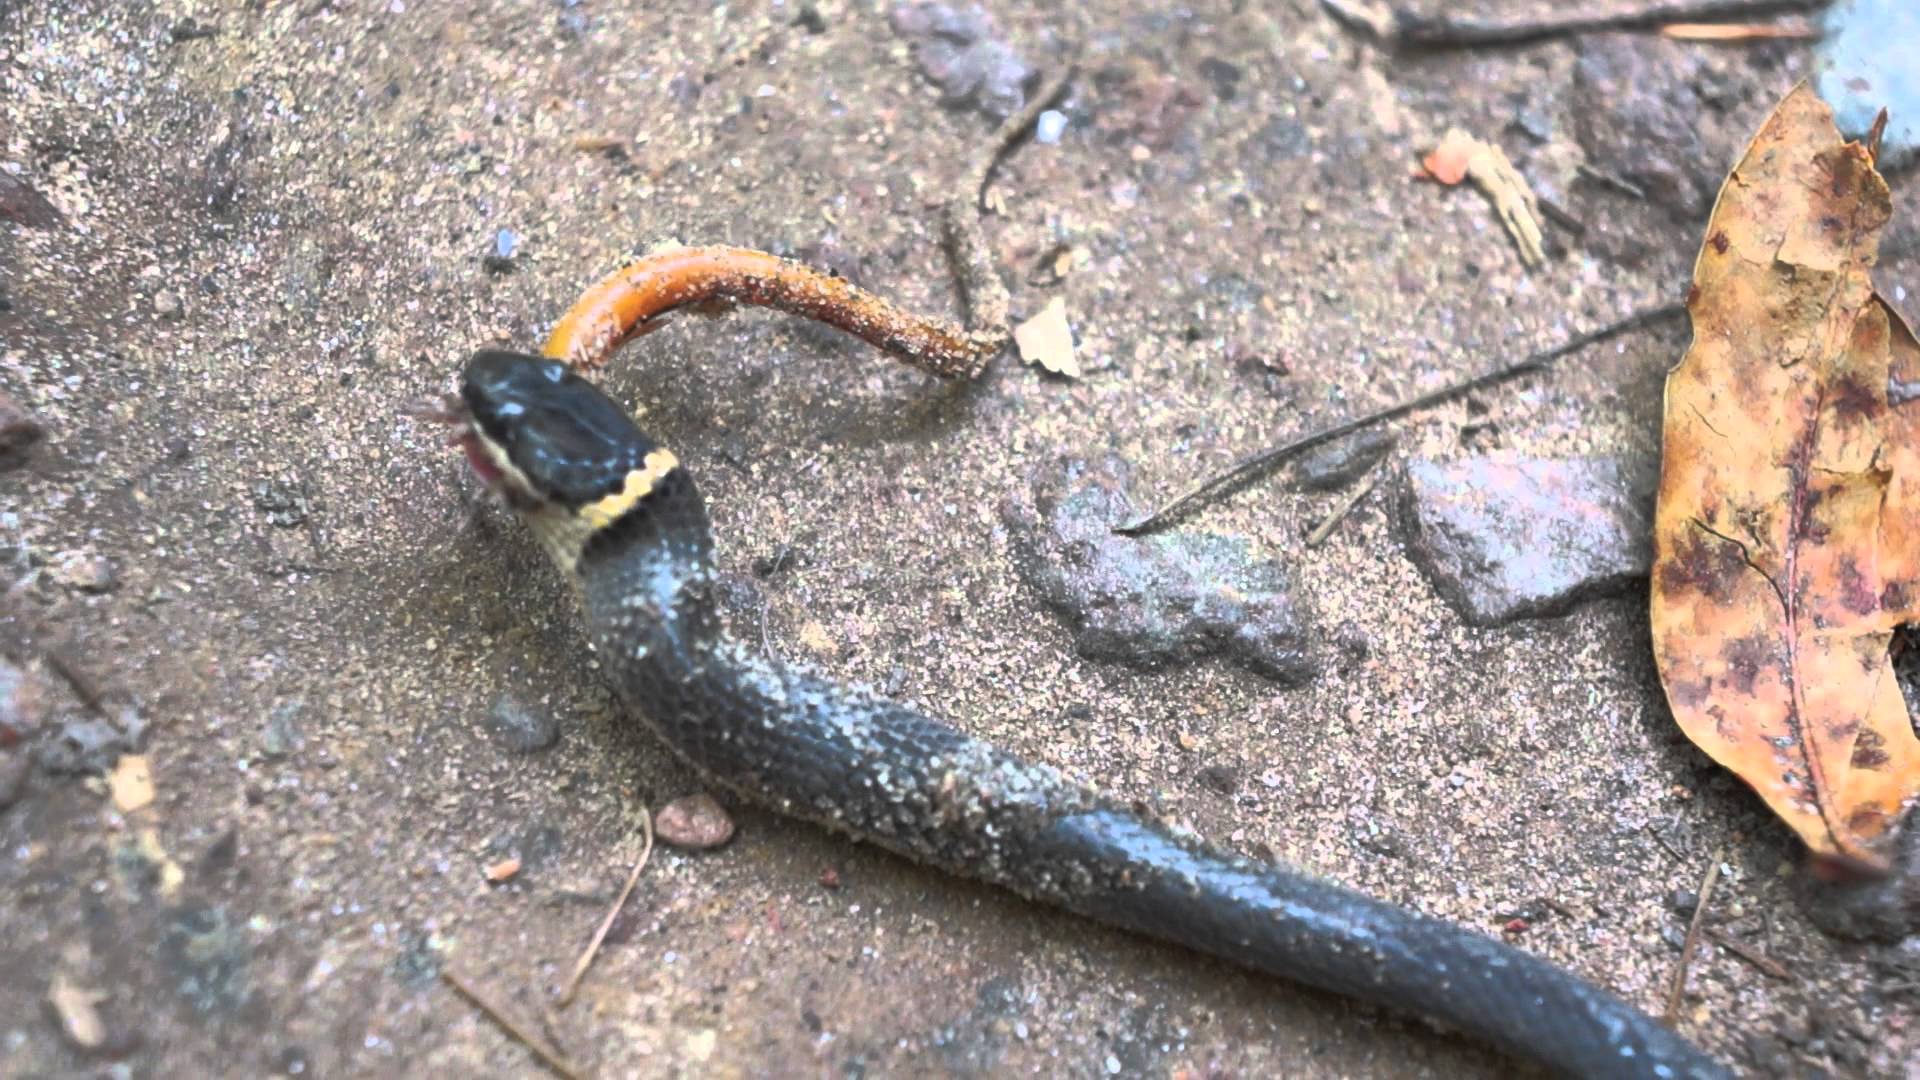 Ringneck snake eats a salamander - YouTube